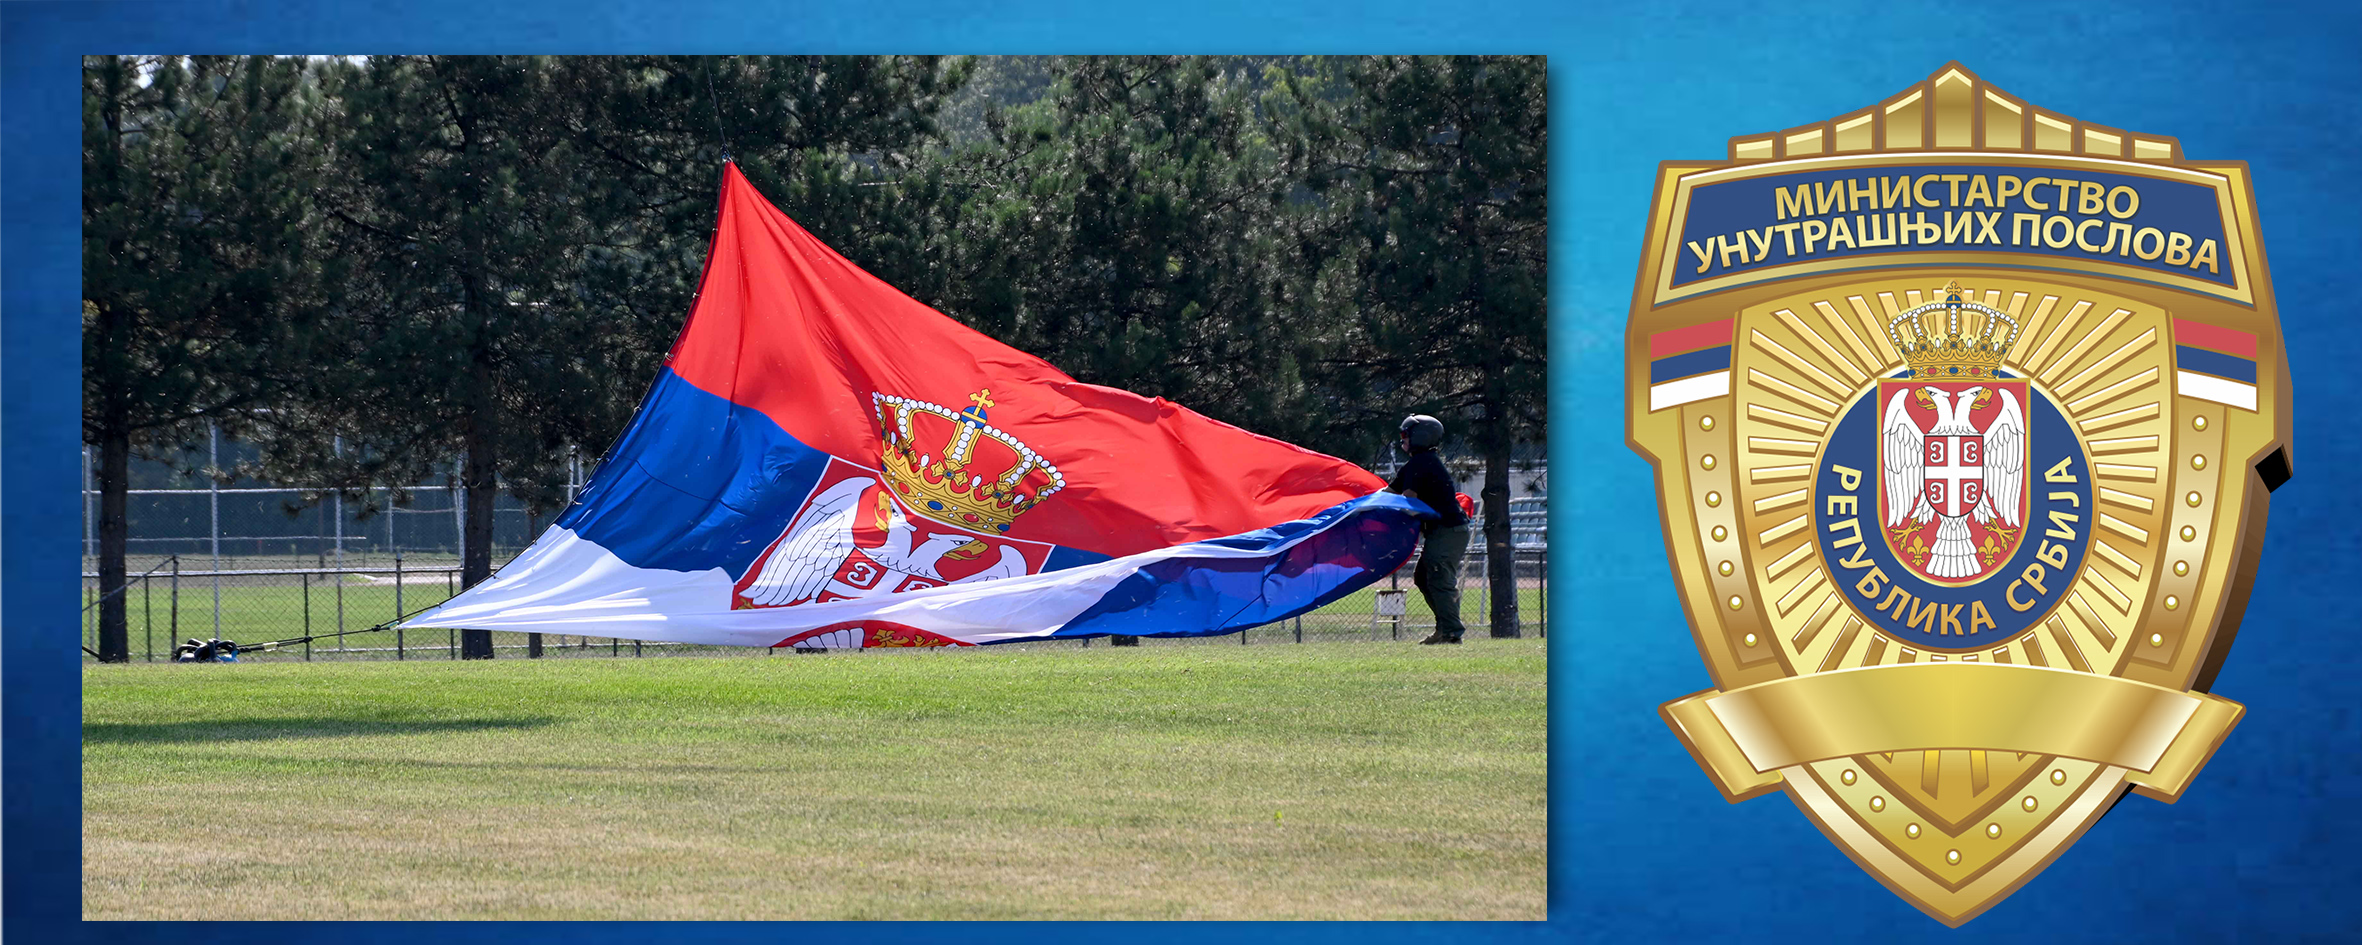 
Дан српског јединства и националне заставе